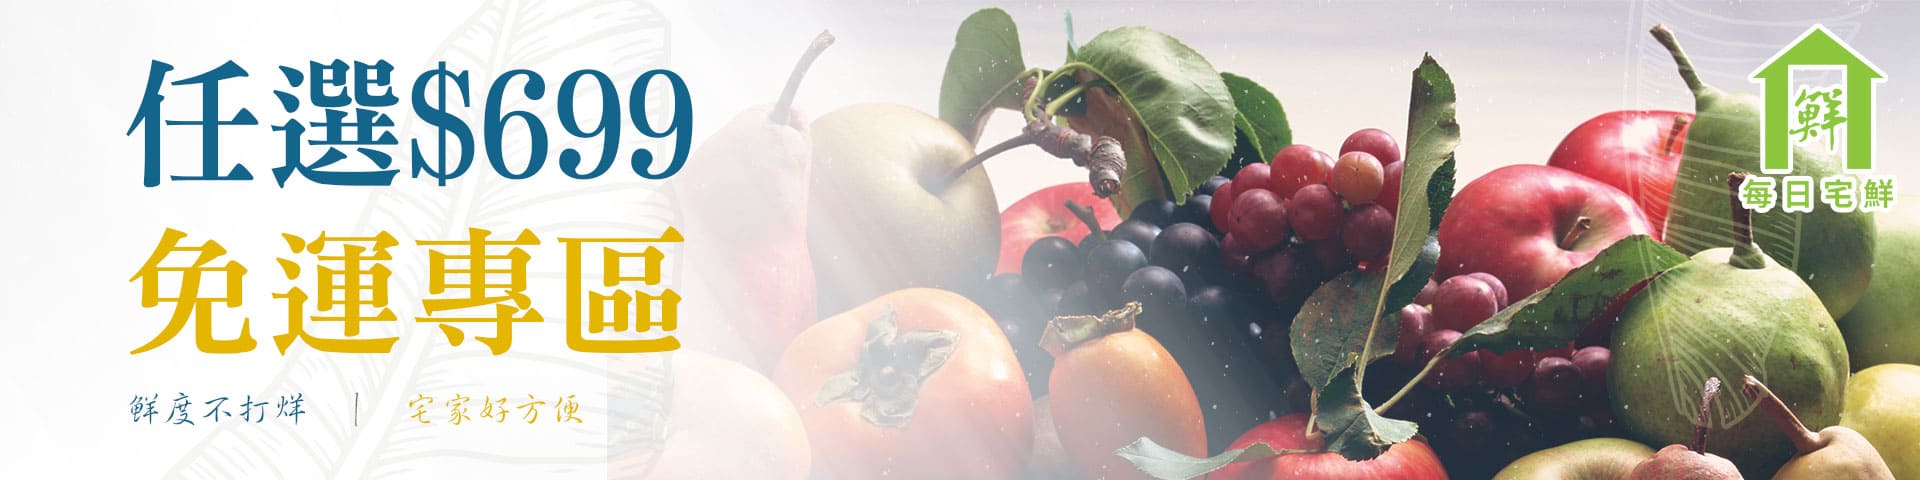 任選免運-臺灣50年水果蔬果專家 | 優質蔬果、水果禮盒、當季水果推薦